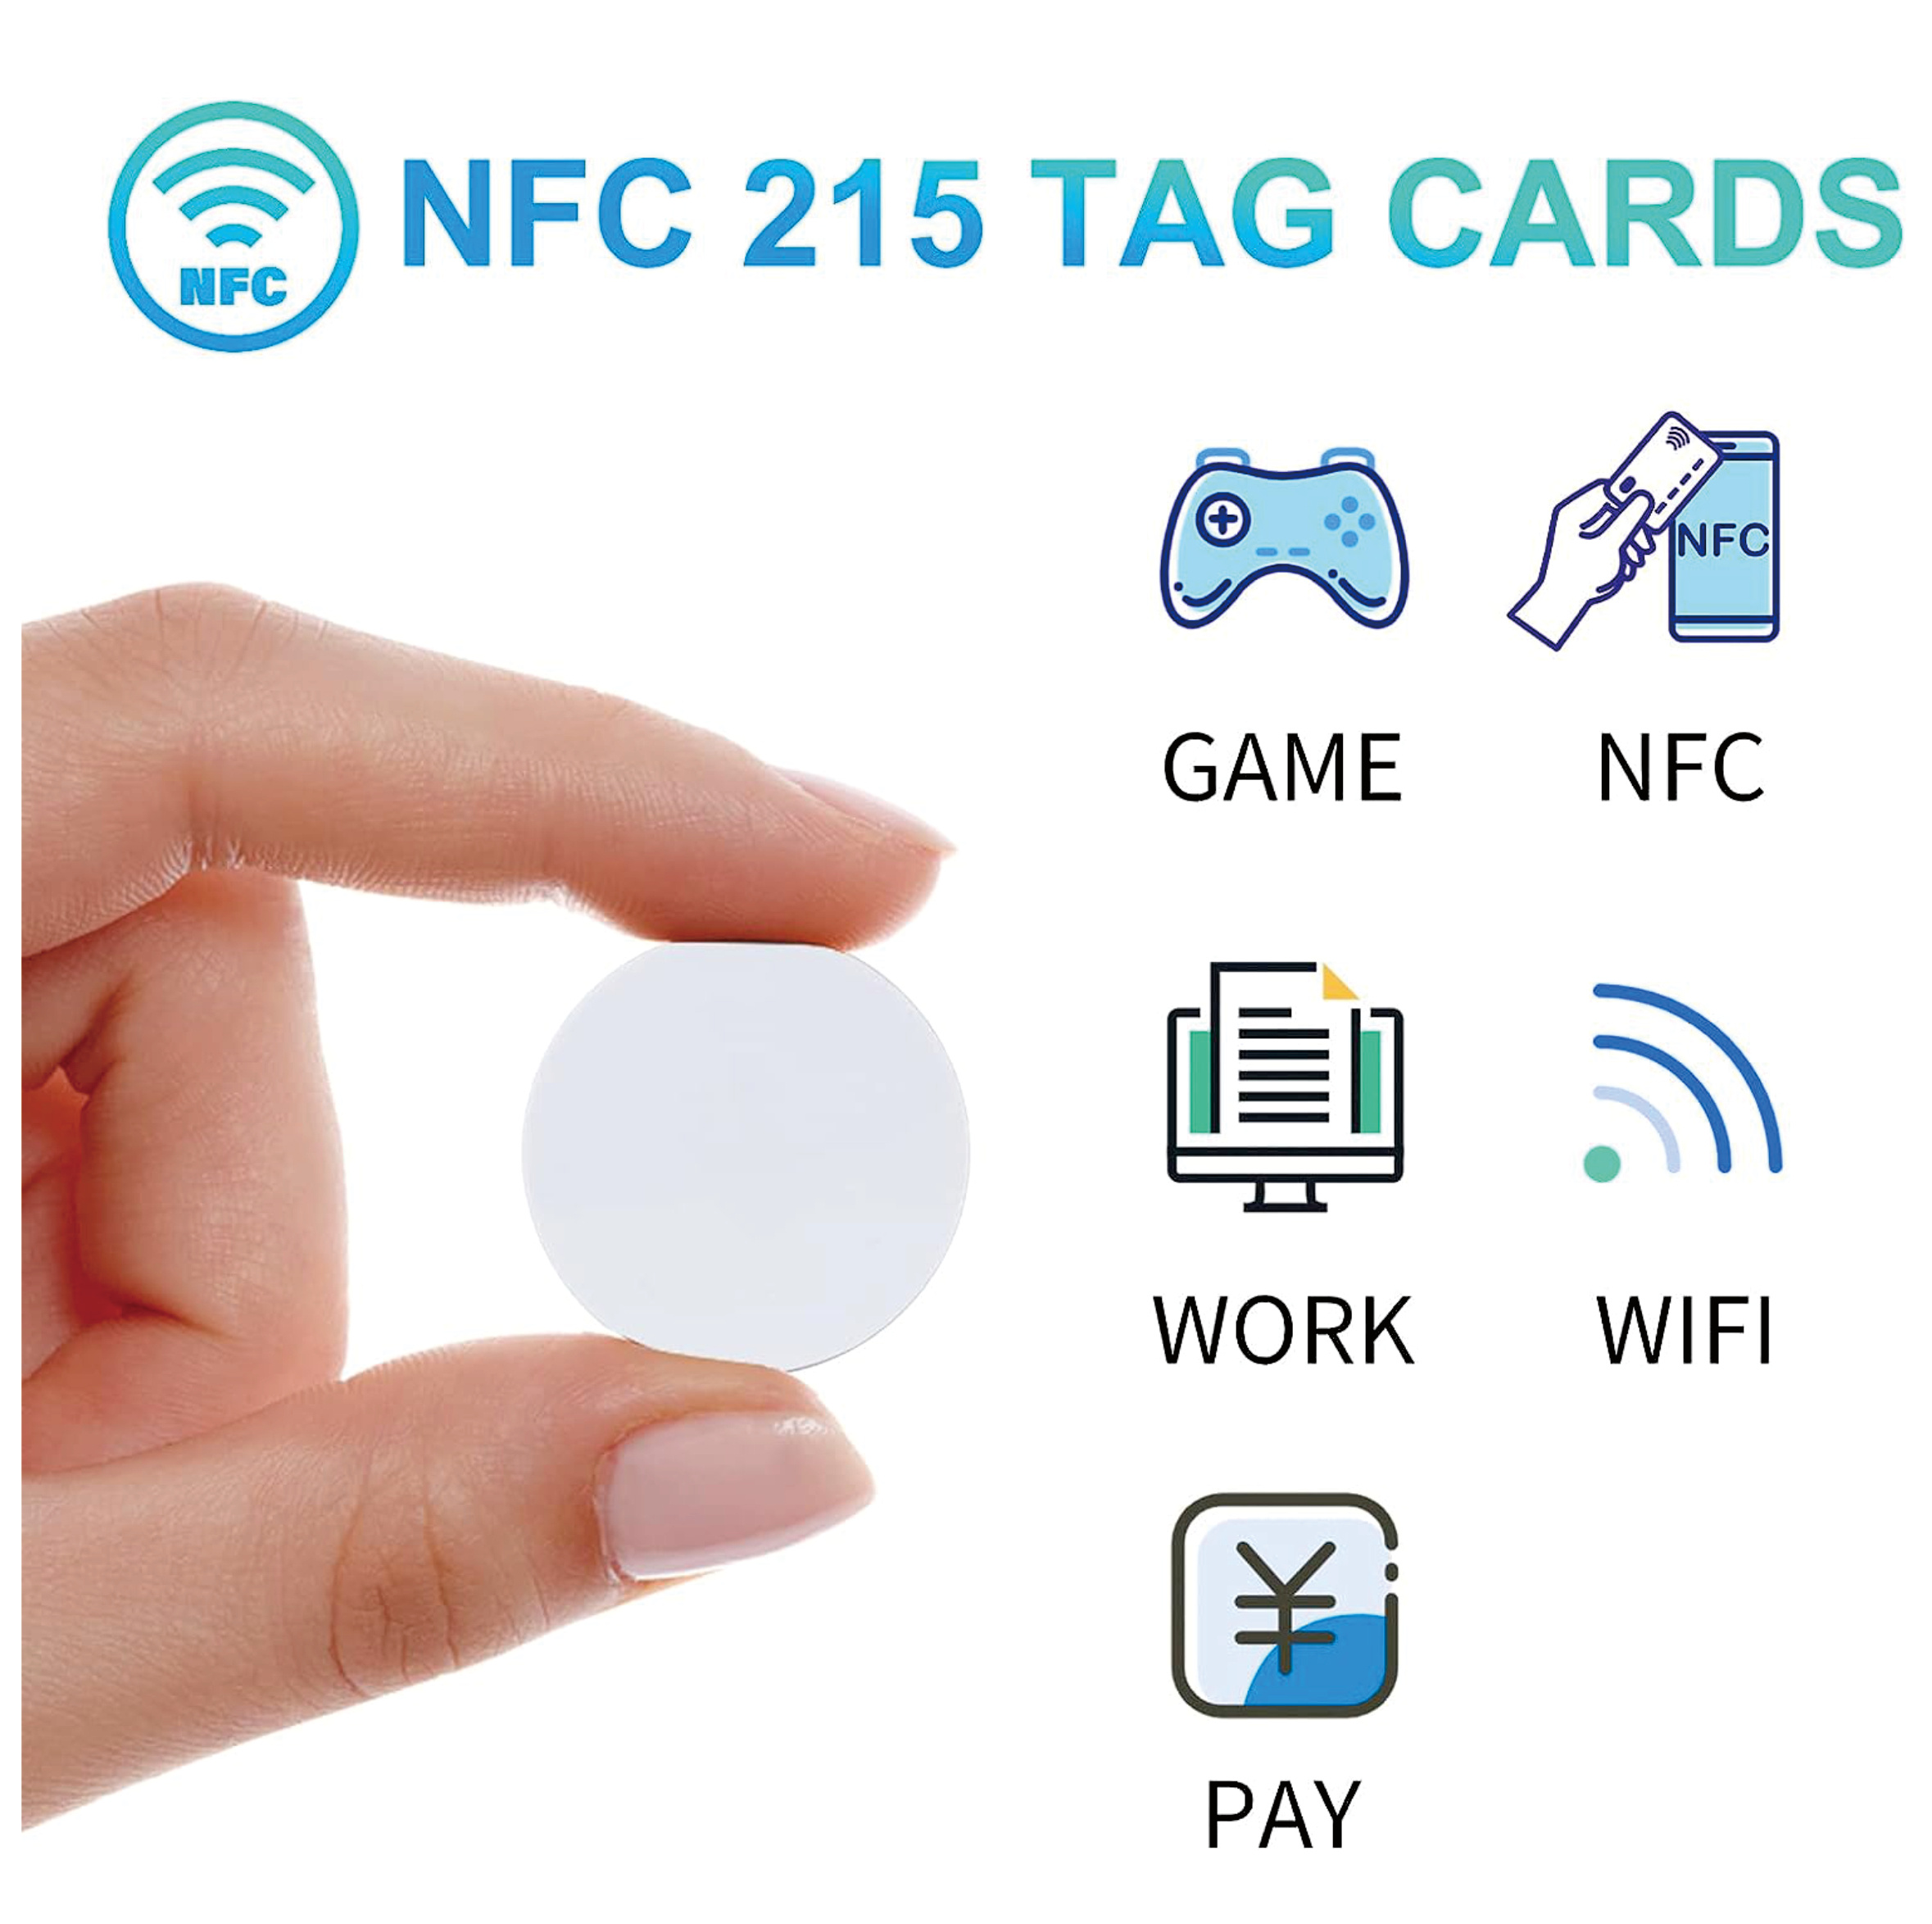 K LAKEY 30 etiquetas NFC NTAG215 NFC, etiquetas redondas NFC 215, tarjetas  de monedas negras de PVC de 0.984 in, memoria de 504 bytes funciona con